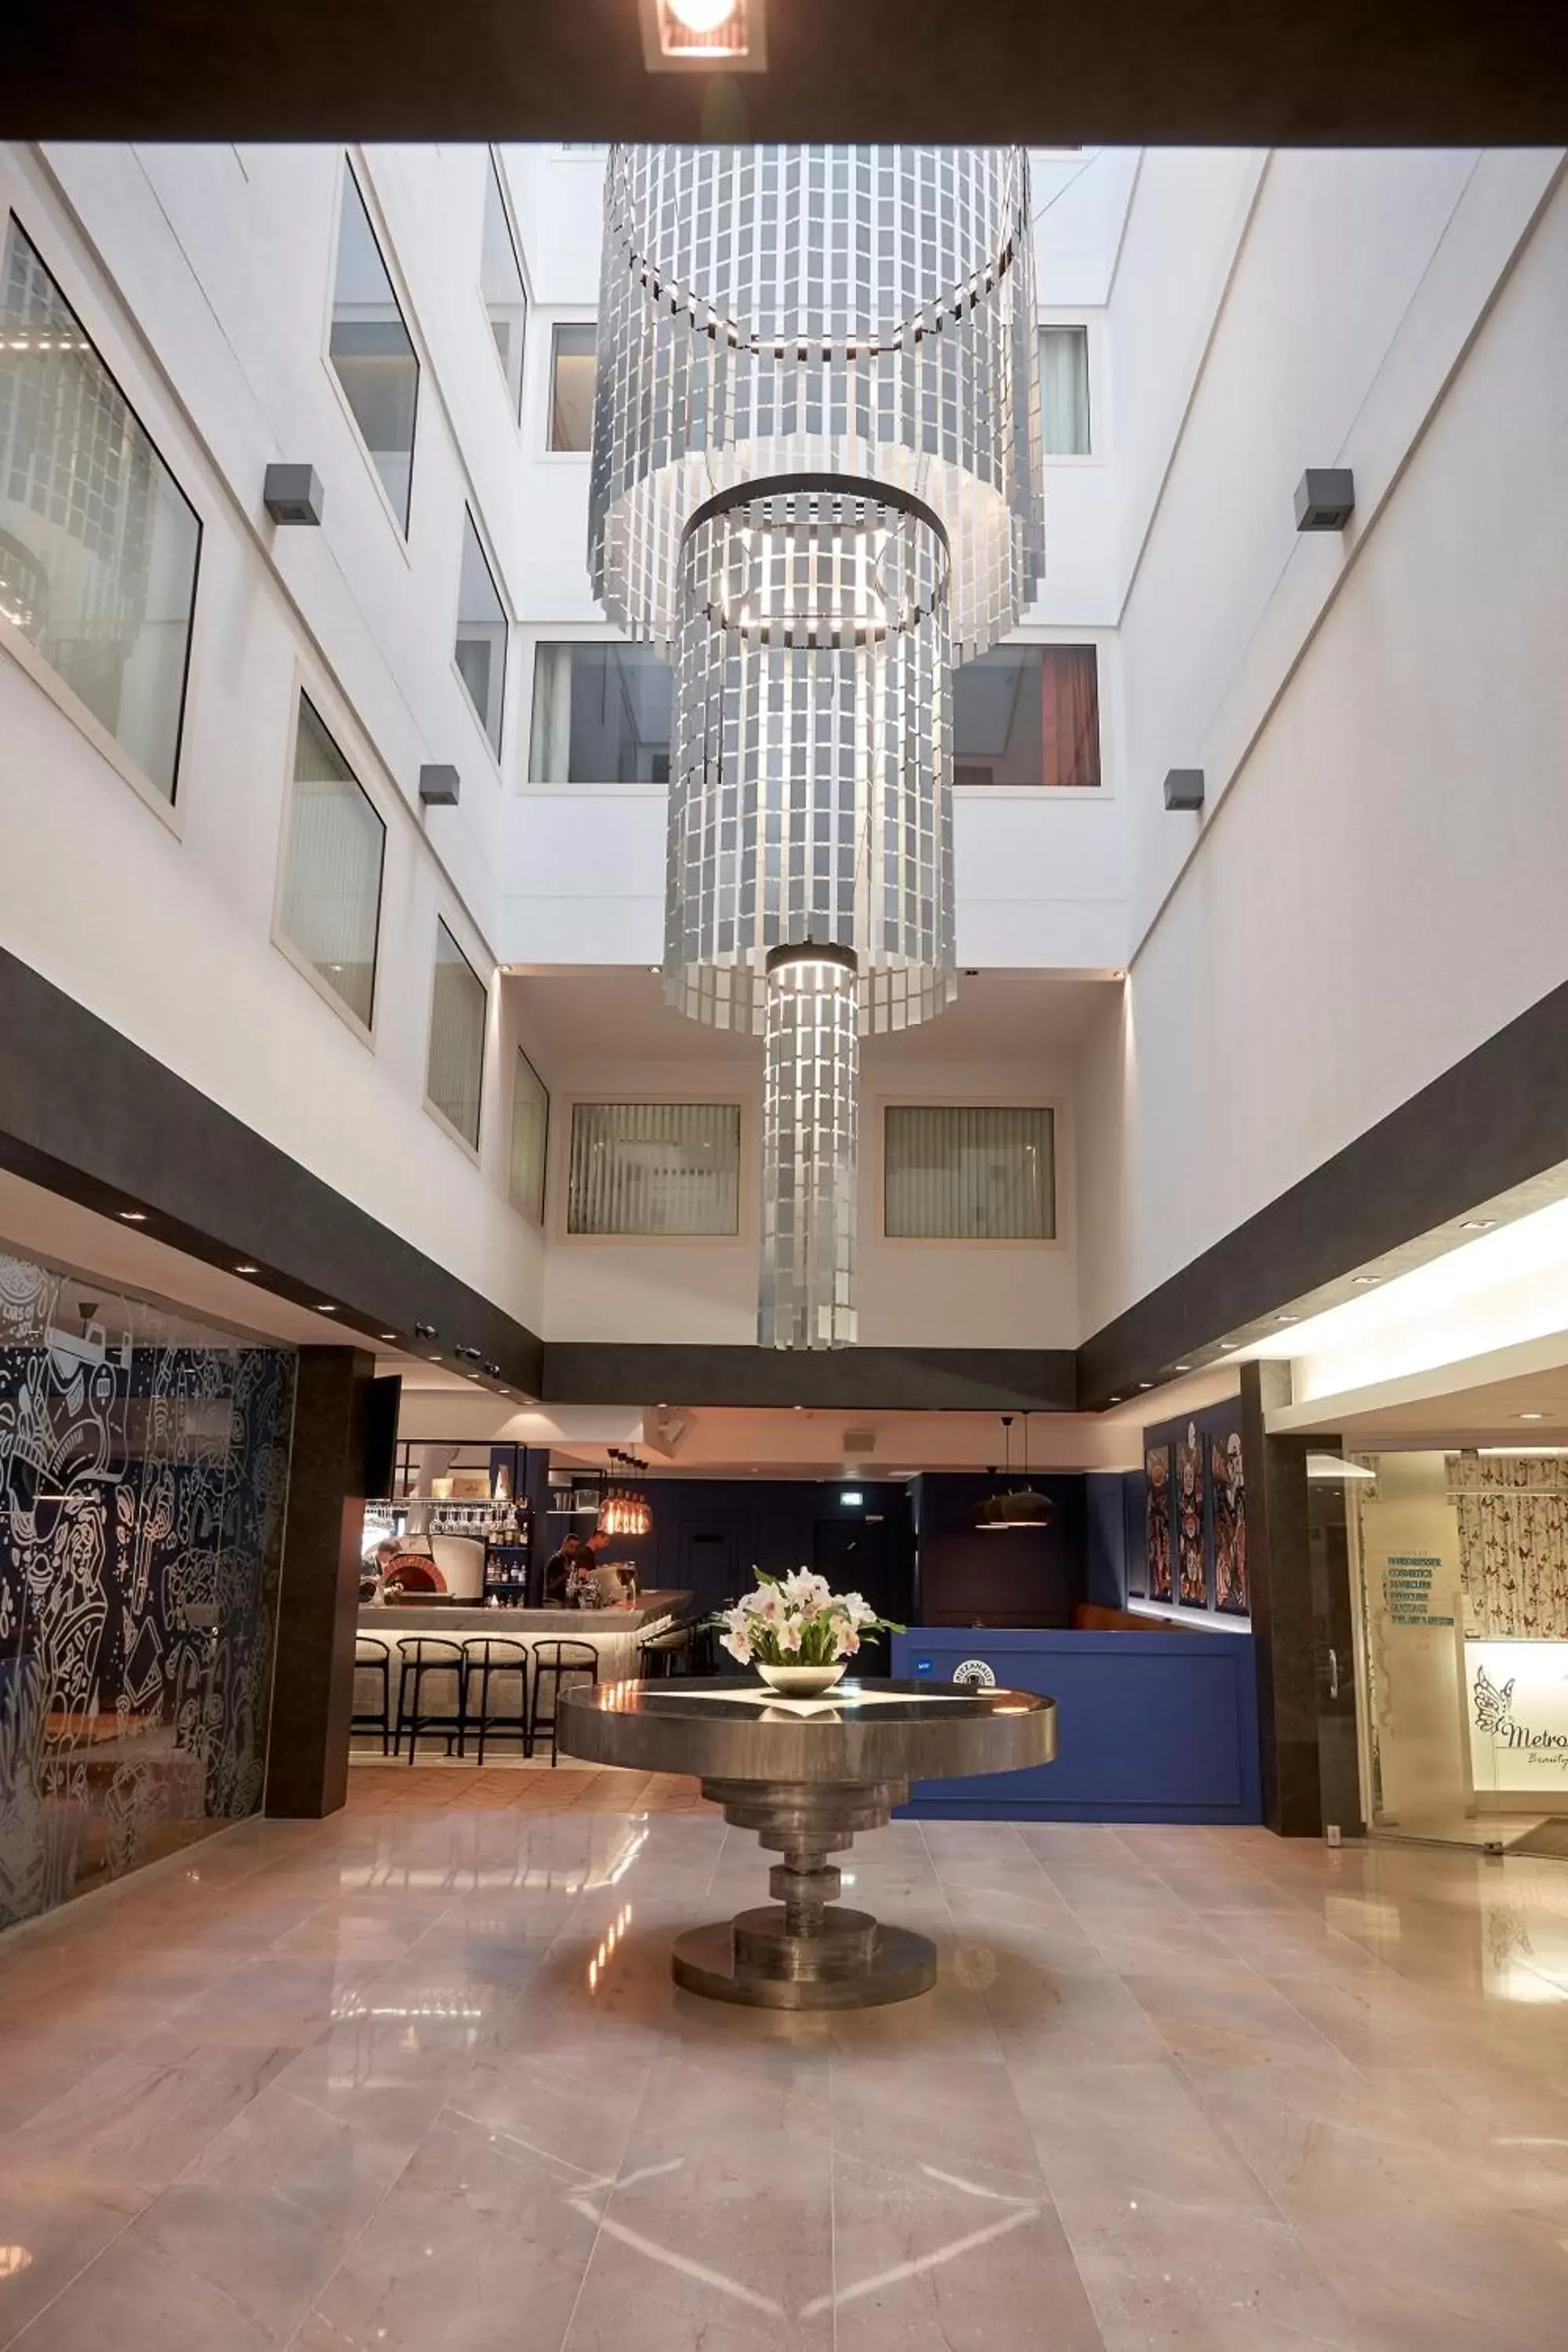 Lobby or reception, Lobby/Reception in Metropol Hotel